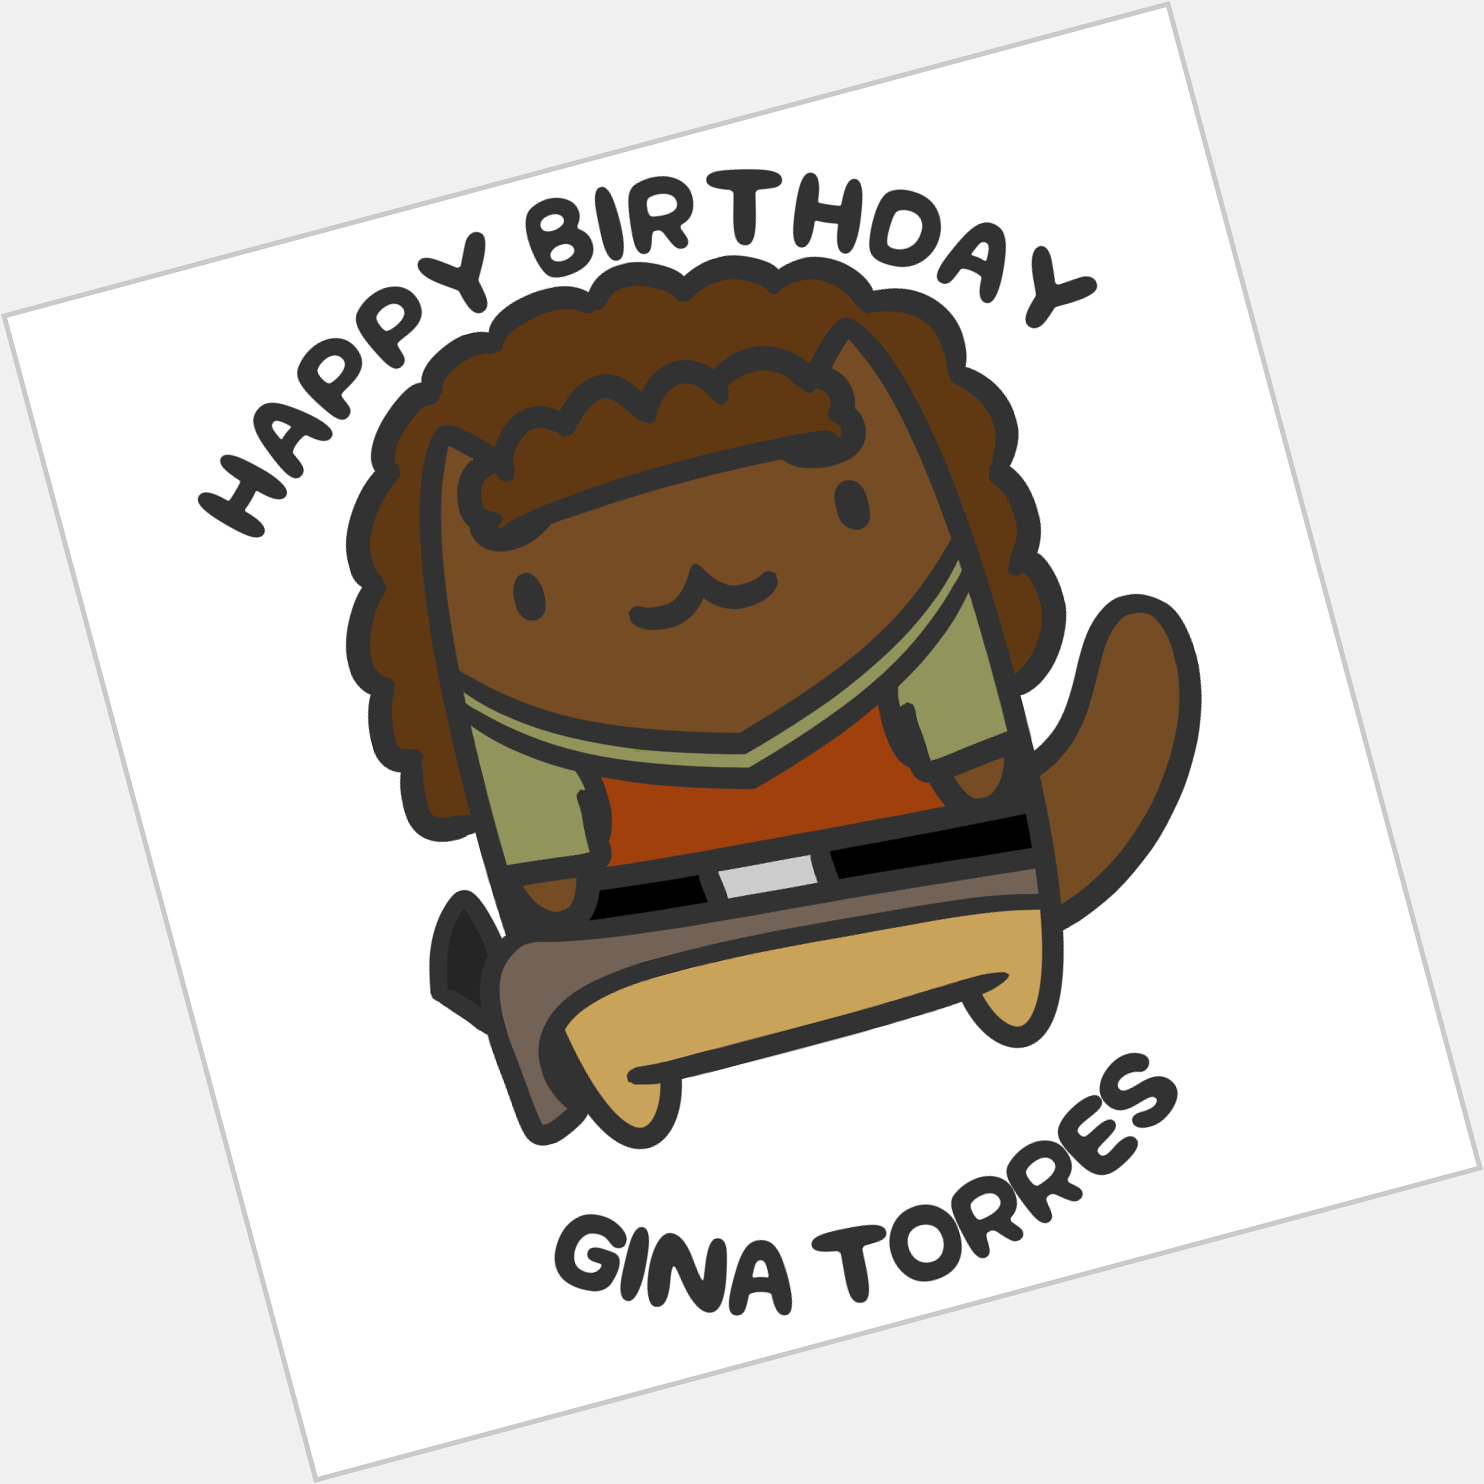 Happy Birthday, Gina Torres!  